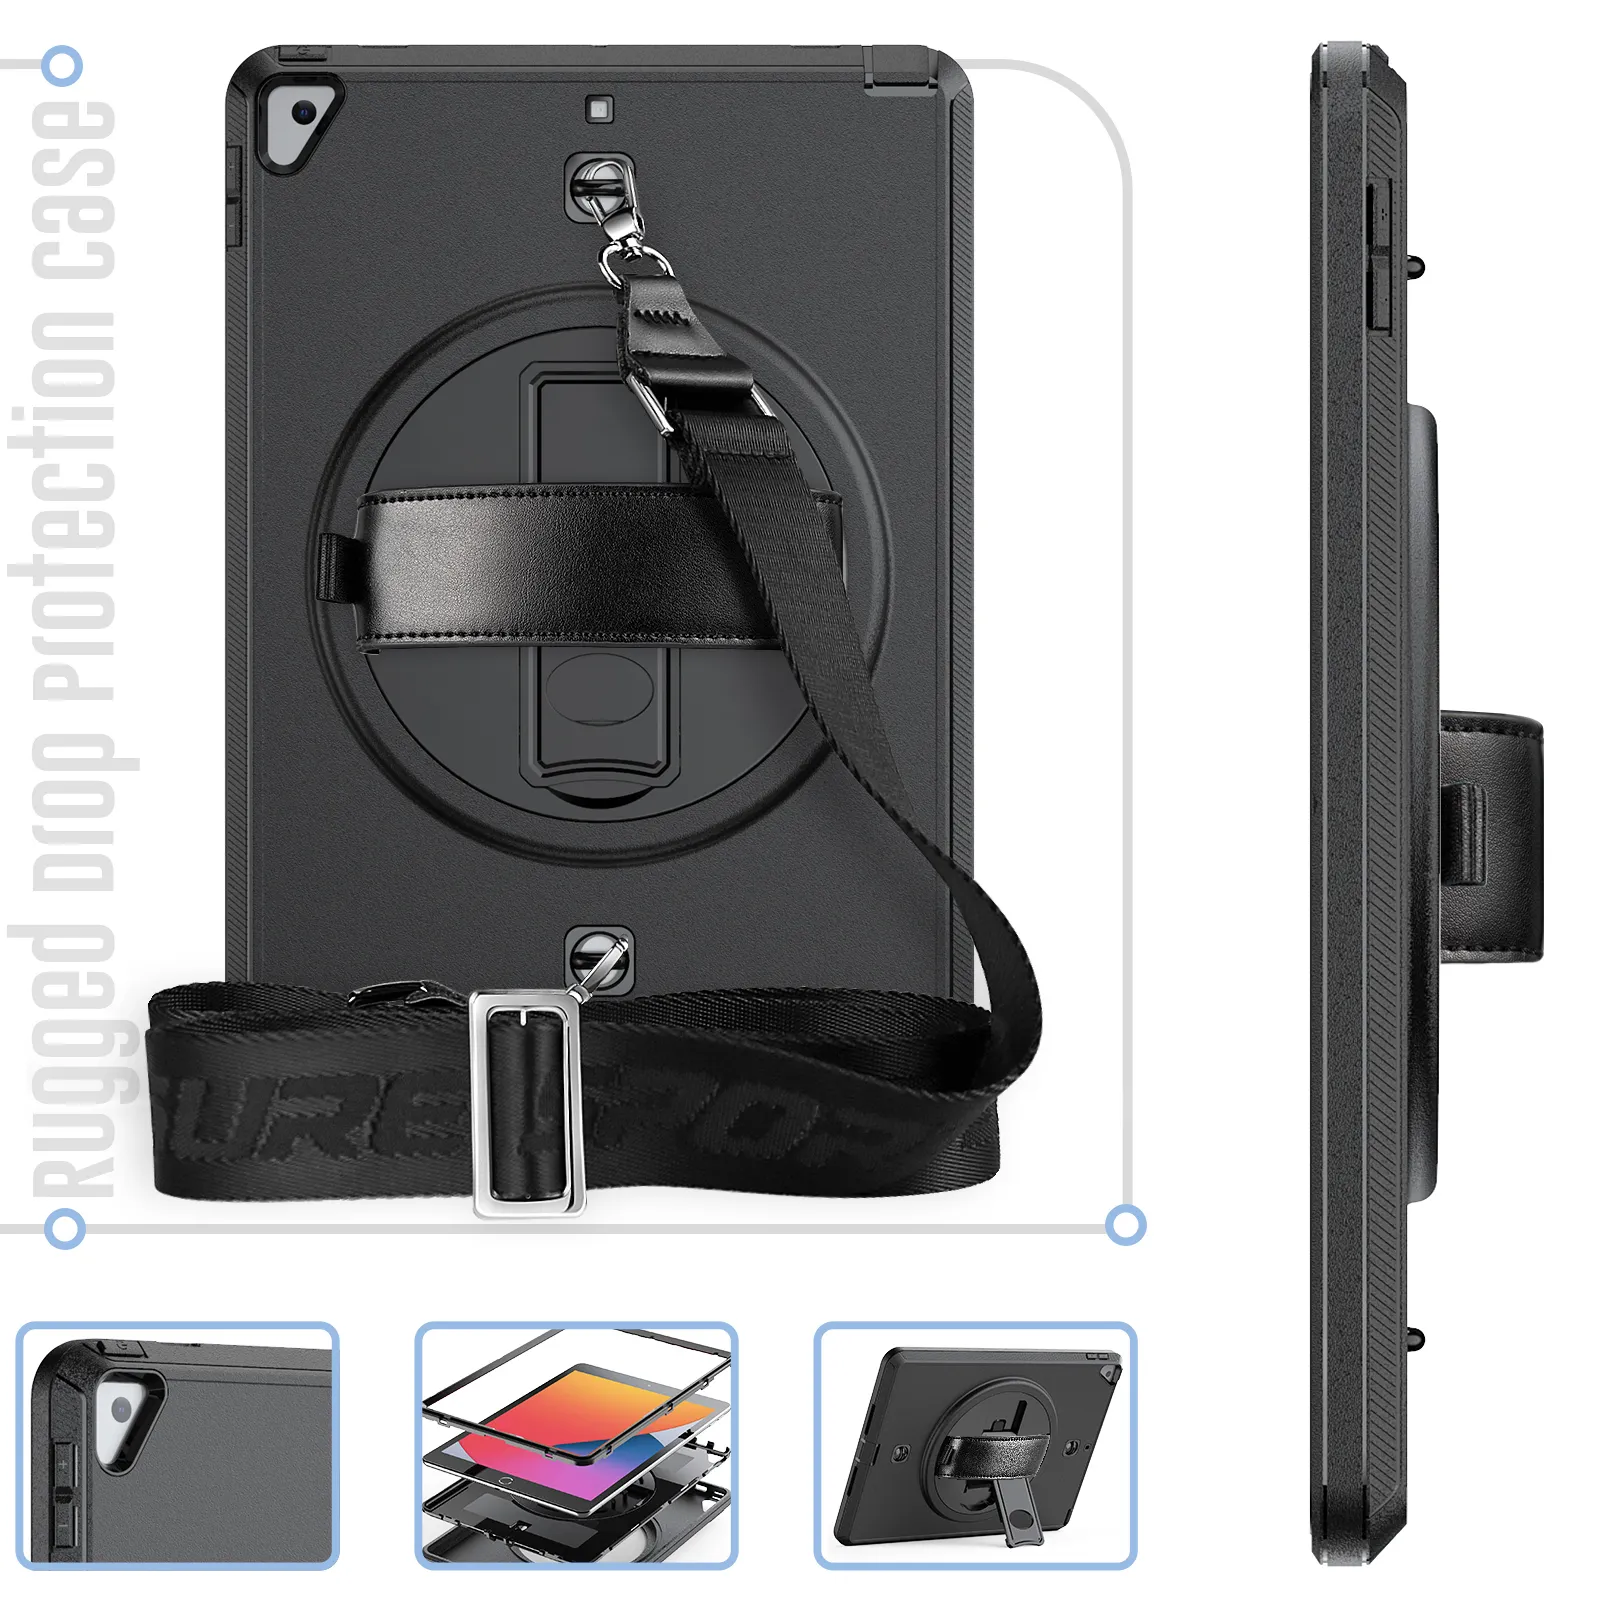 Universal Full schutzhülle stoßfest Case Cover 3-schicht Protective Case mit Shoulder Strap für ipad 10.2/10.5 Inches